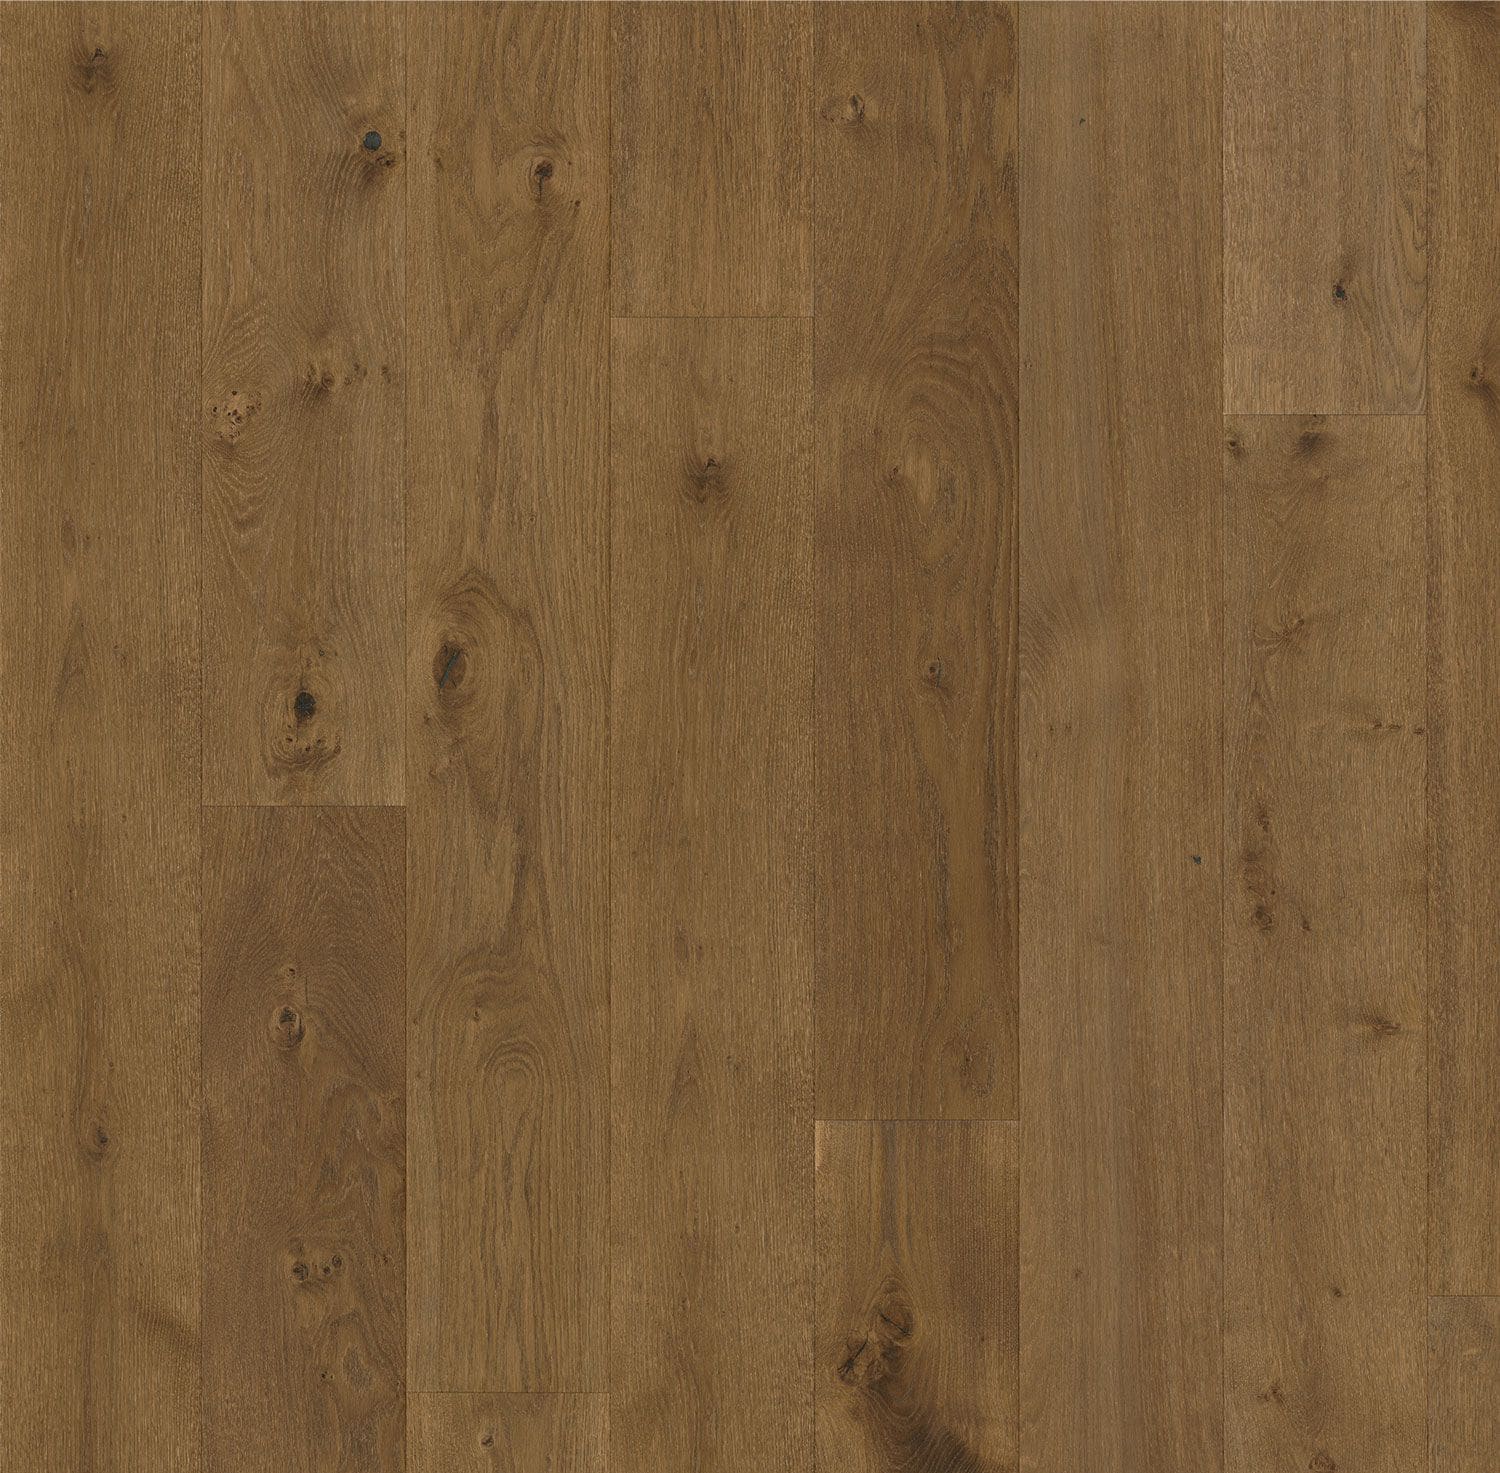 Forever European Oak Flooring in Chestnut